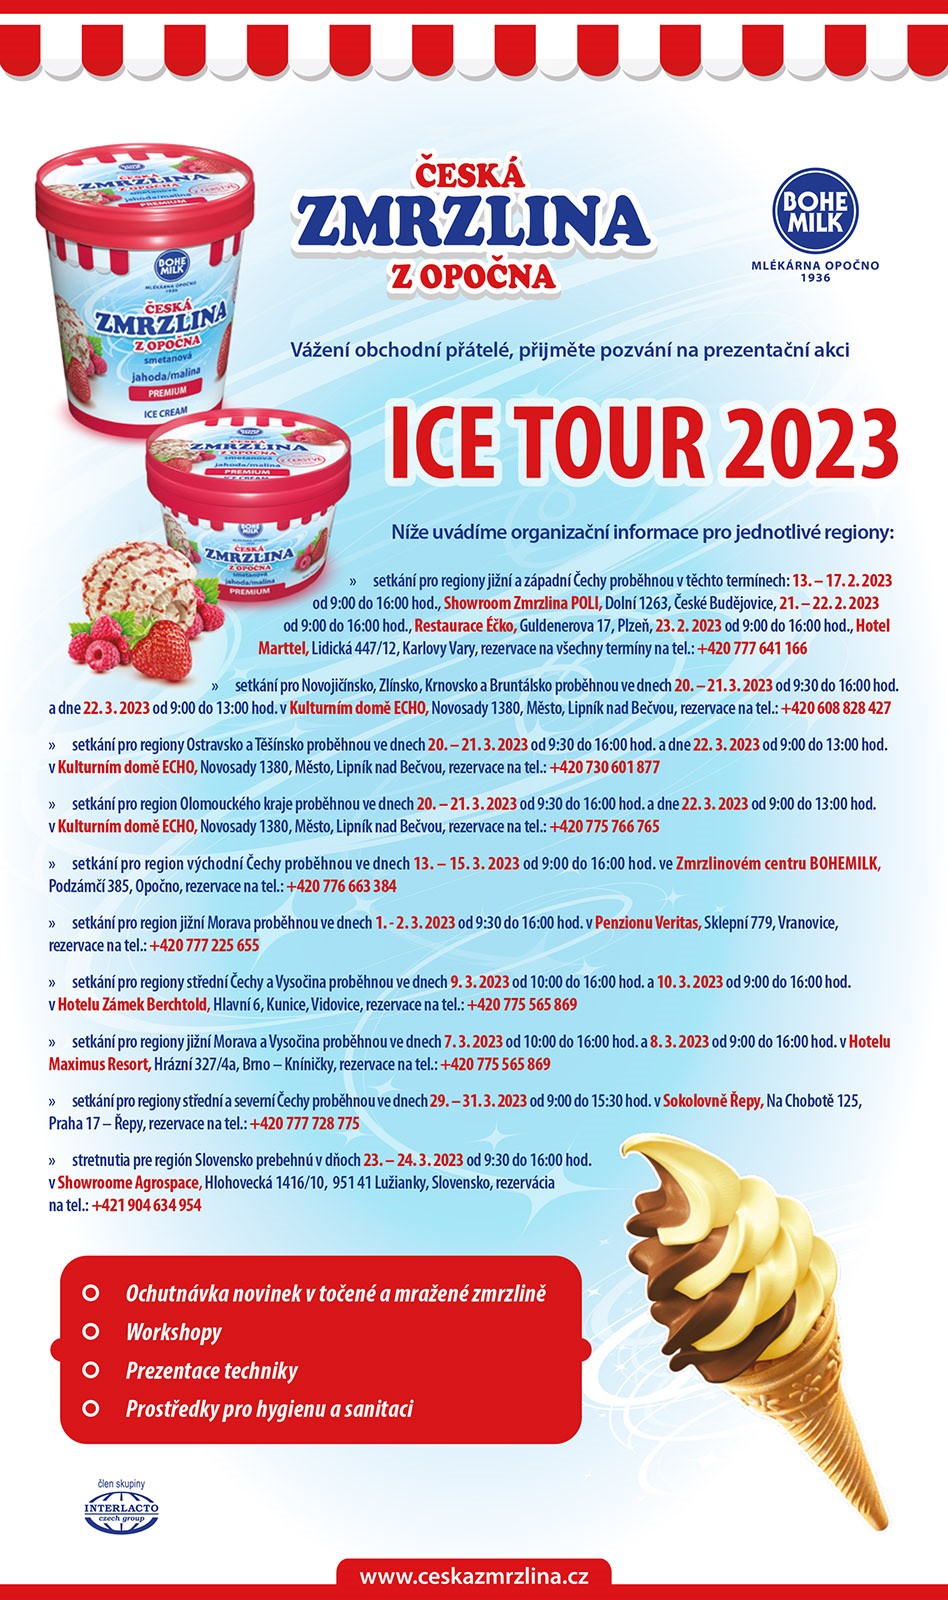 Ice Tour 2023